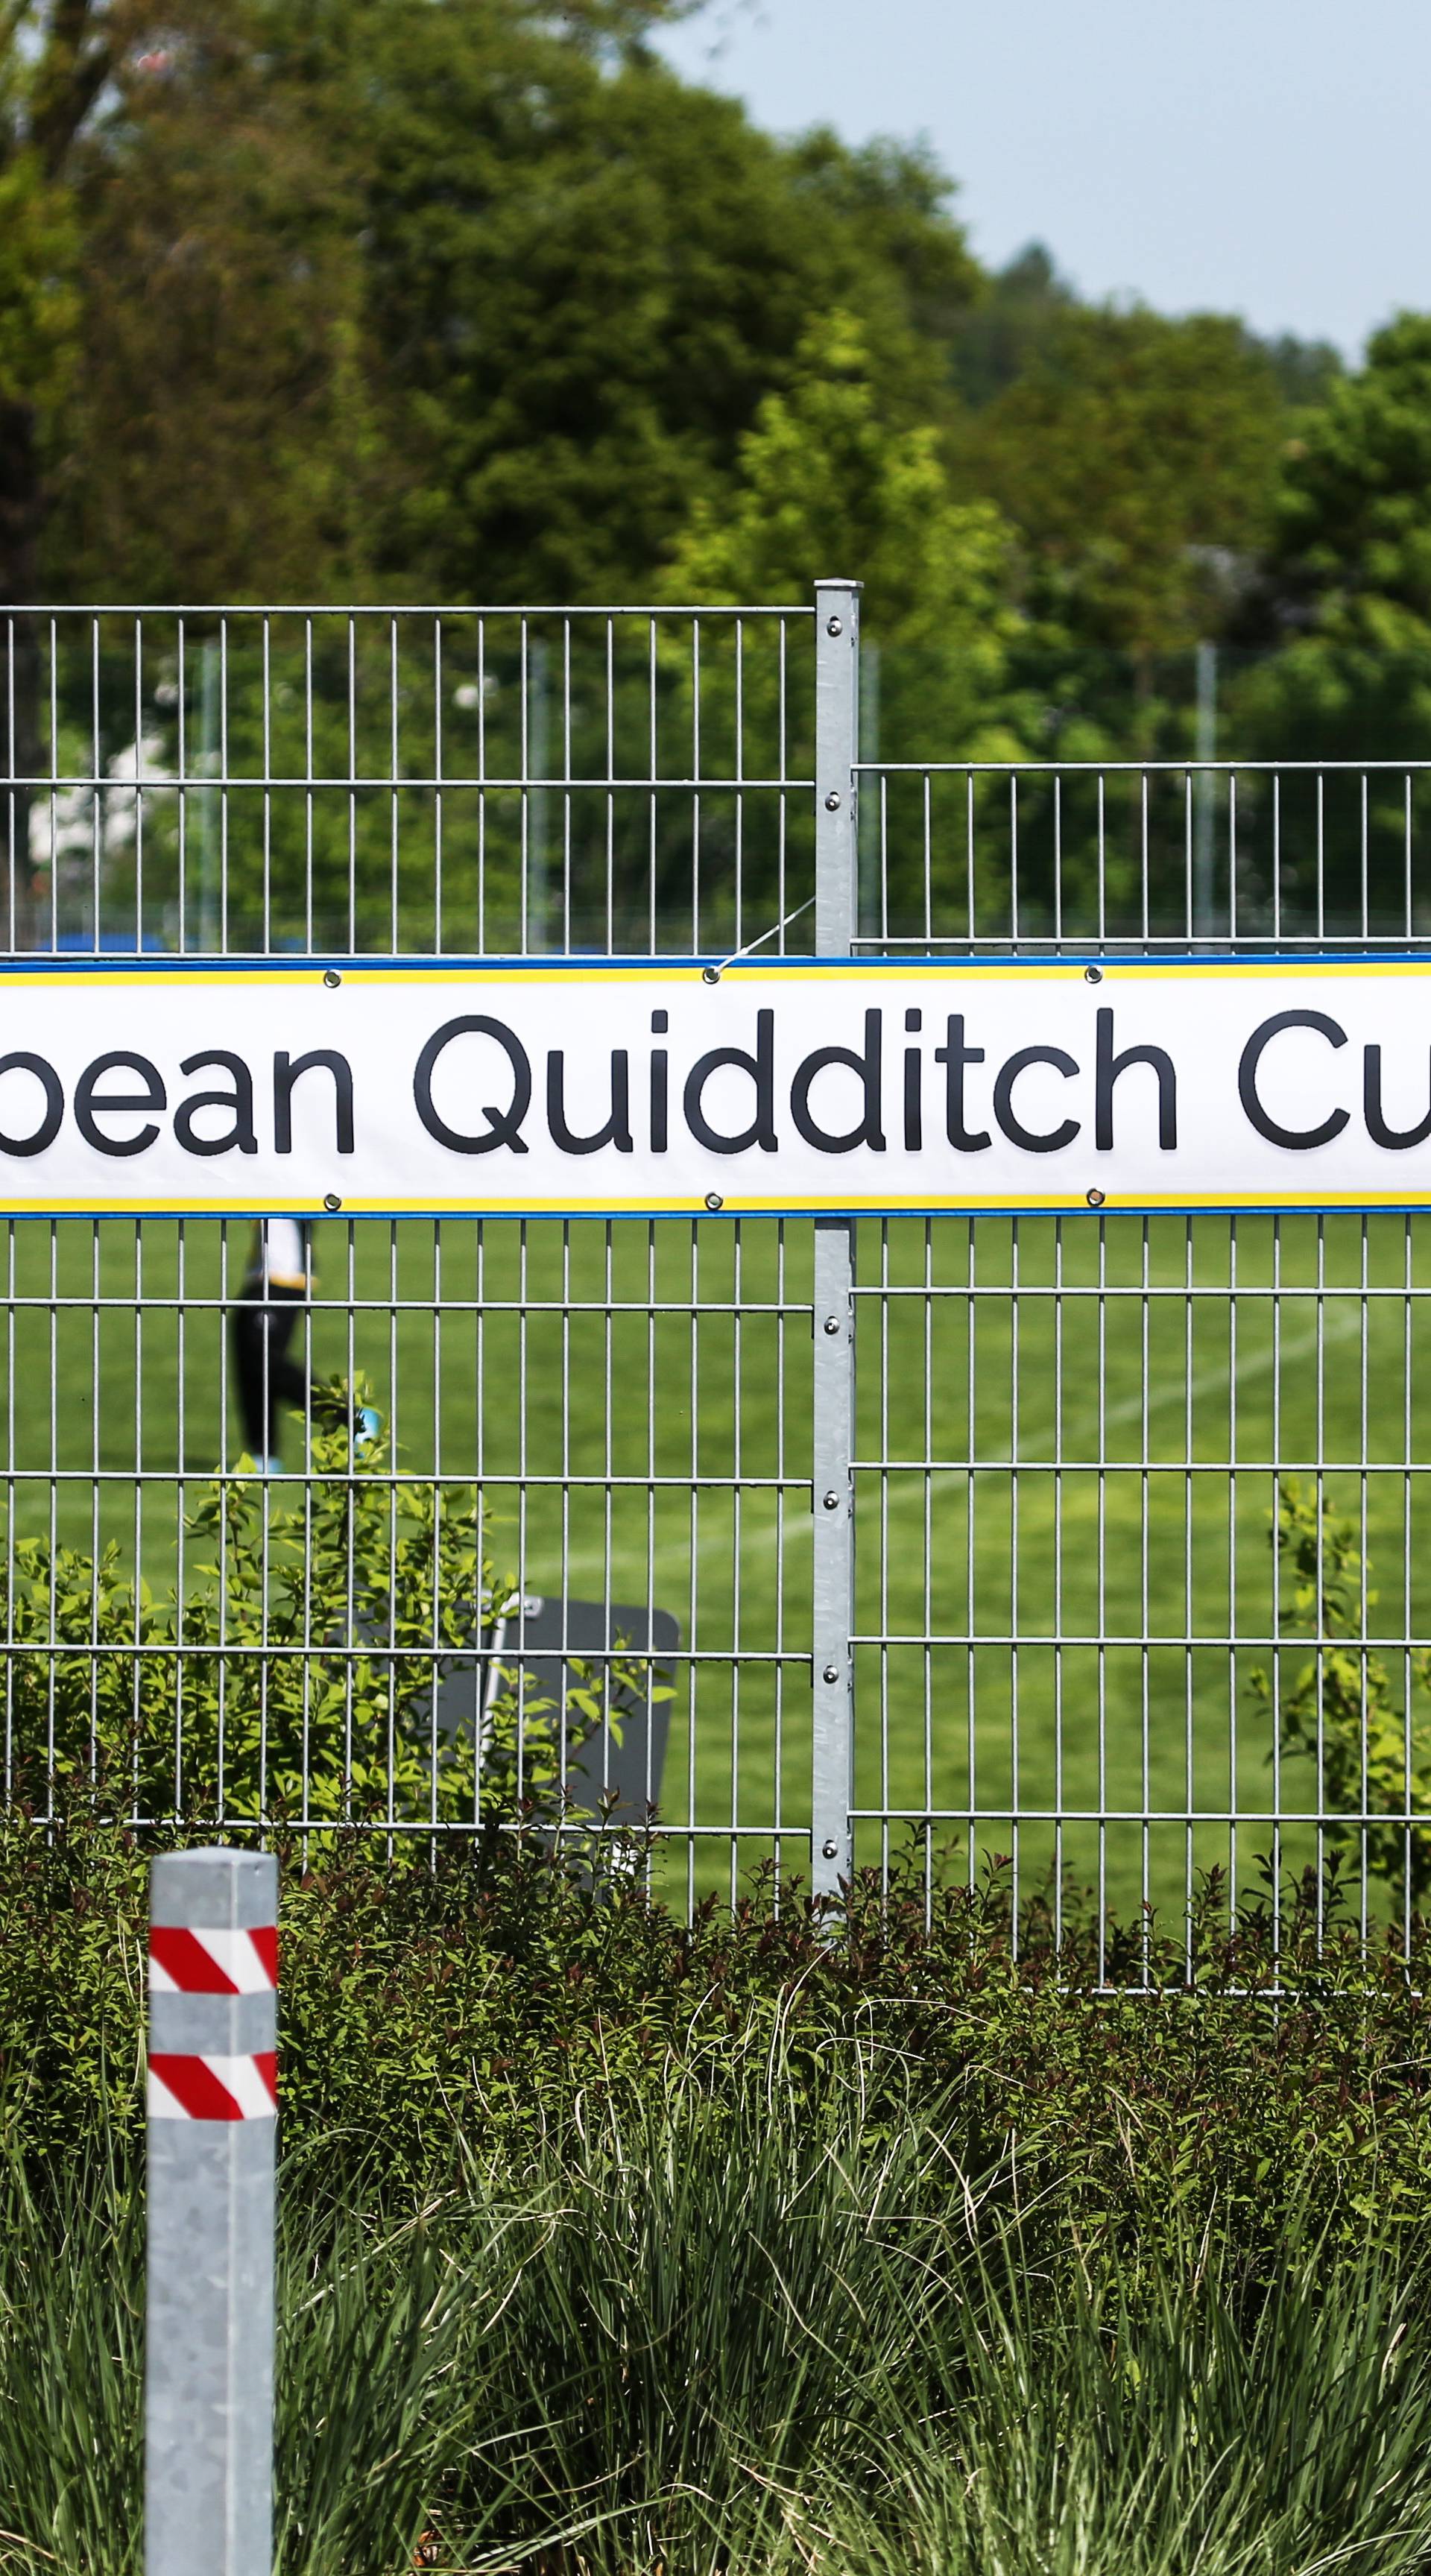 European Quidditch Cup 2018 Pfaffenhofen an der Ilm